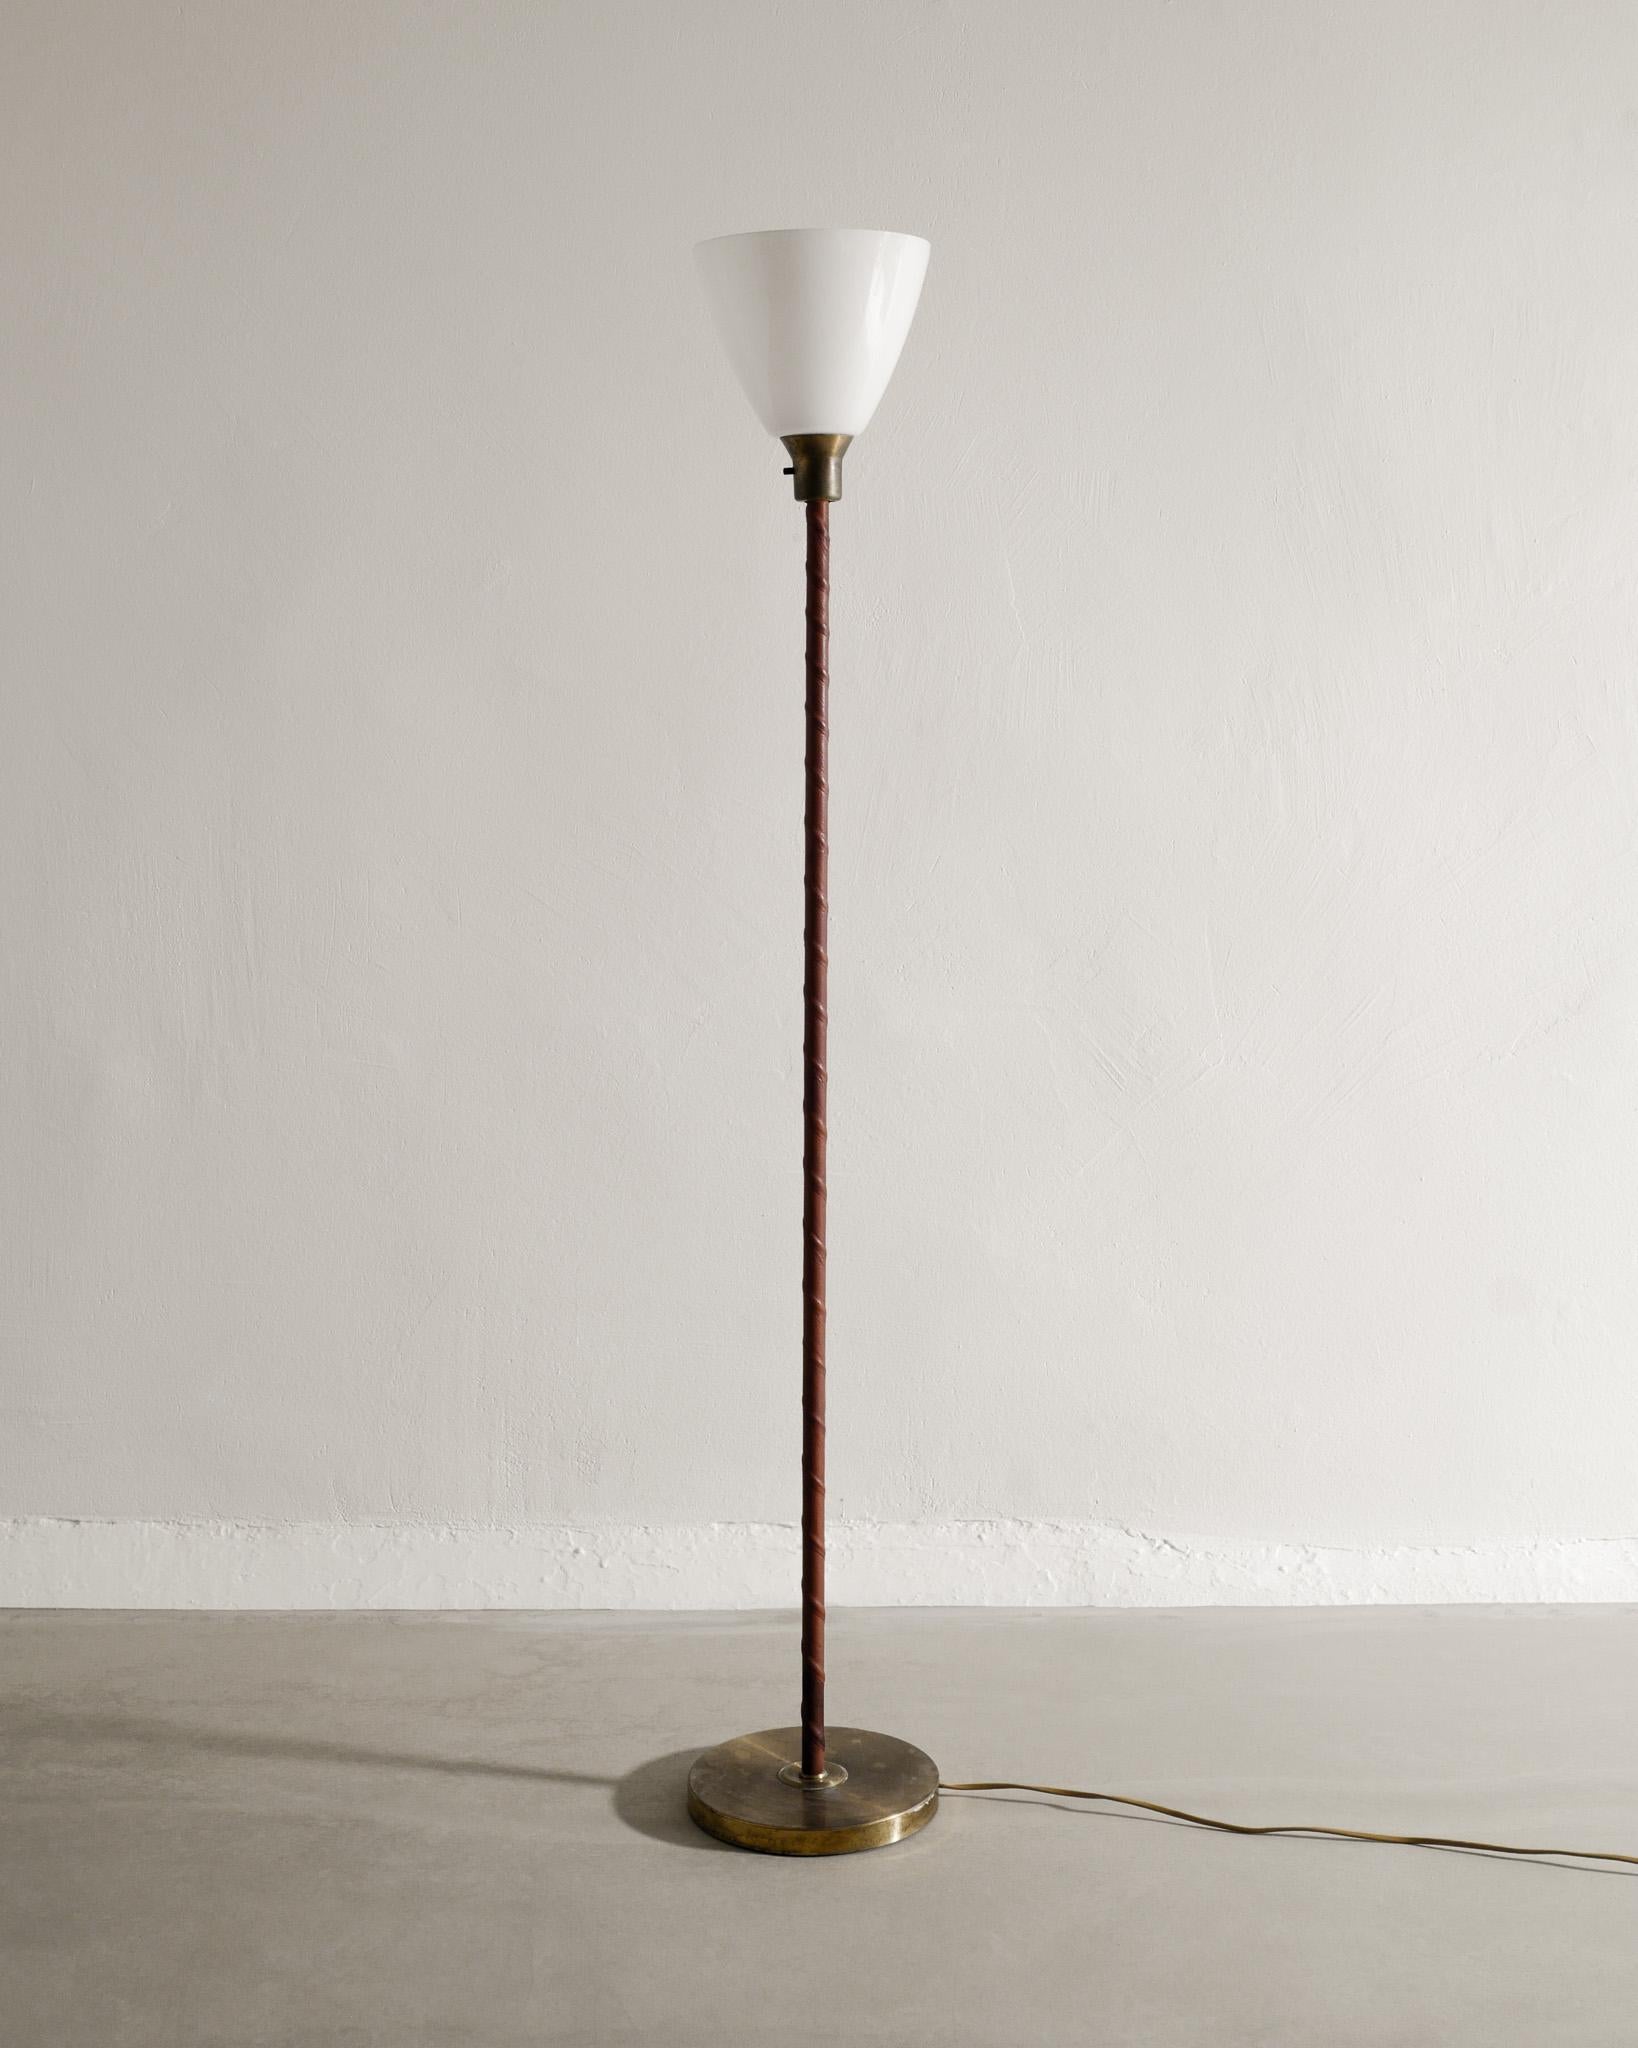 Seltene schwedische Stehlampe aus der Mitte des Jahrhunderts aus Messing, Leder und Opalglas, hergestellt in Schweden, 1950er Jahre. In gutem Zustand mit alters- und gebrauchsbedingter Patina. Unter dem Sockel gestempelt 